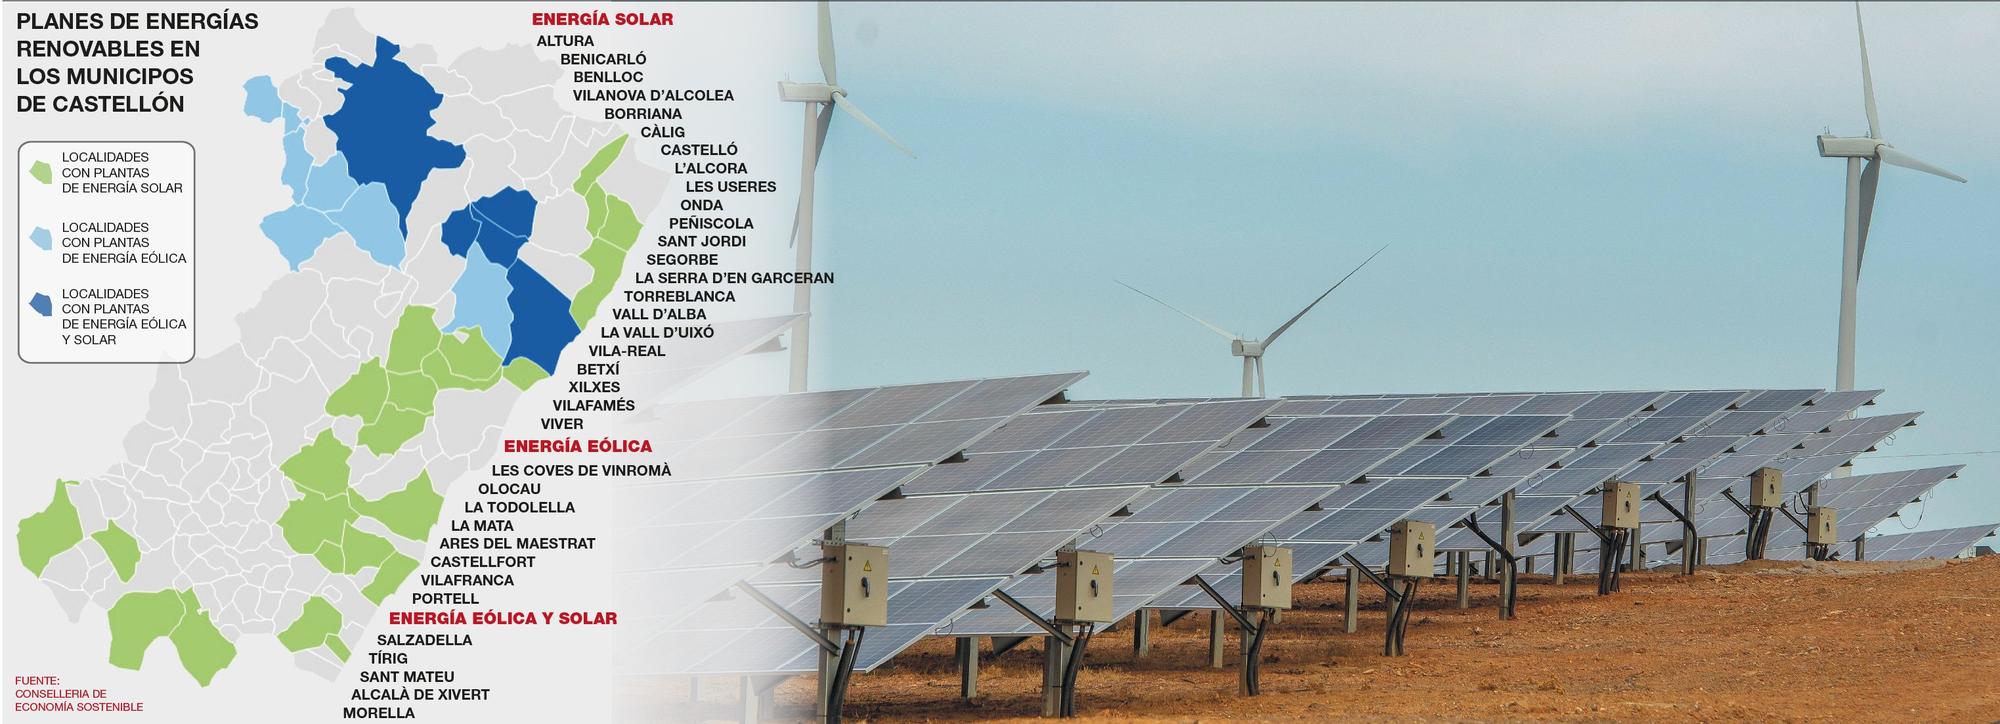 Planes previstos de energías renovables en Castellón.